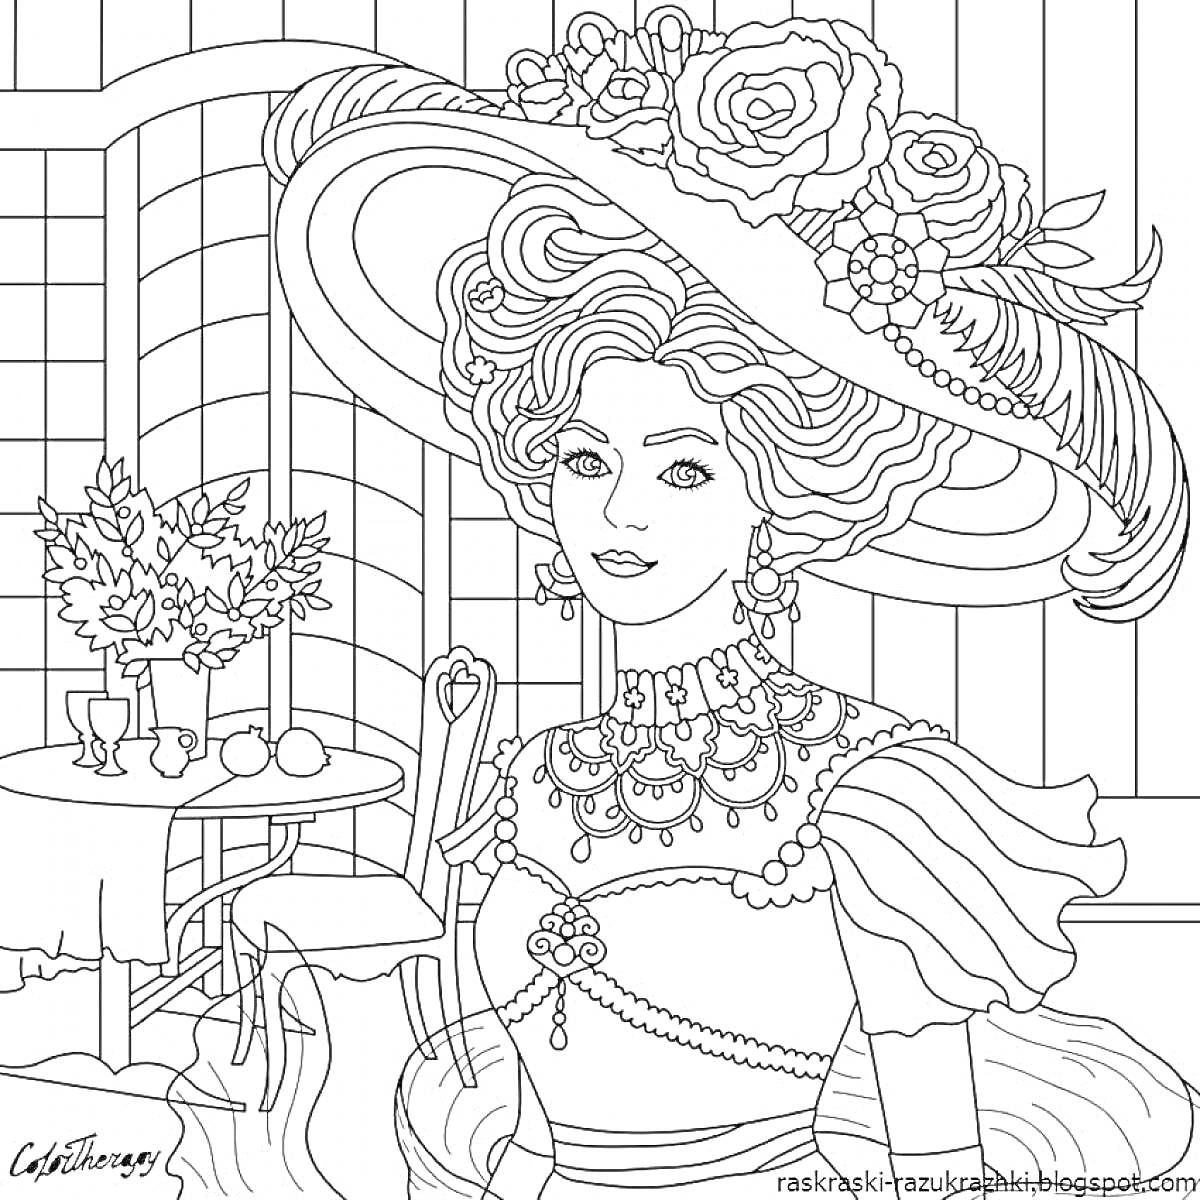 Раскраска Женщина в роскошной шляпе с цветами на террасе, рядом стол с цветами и фруктами